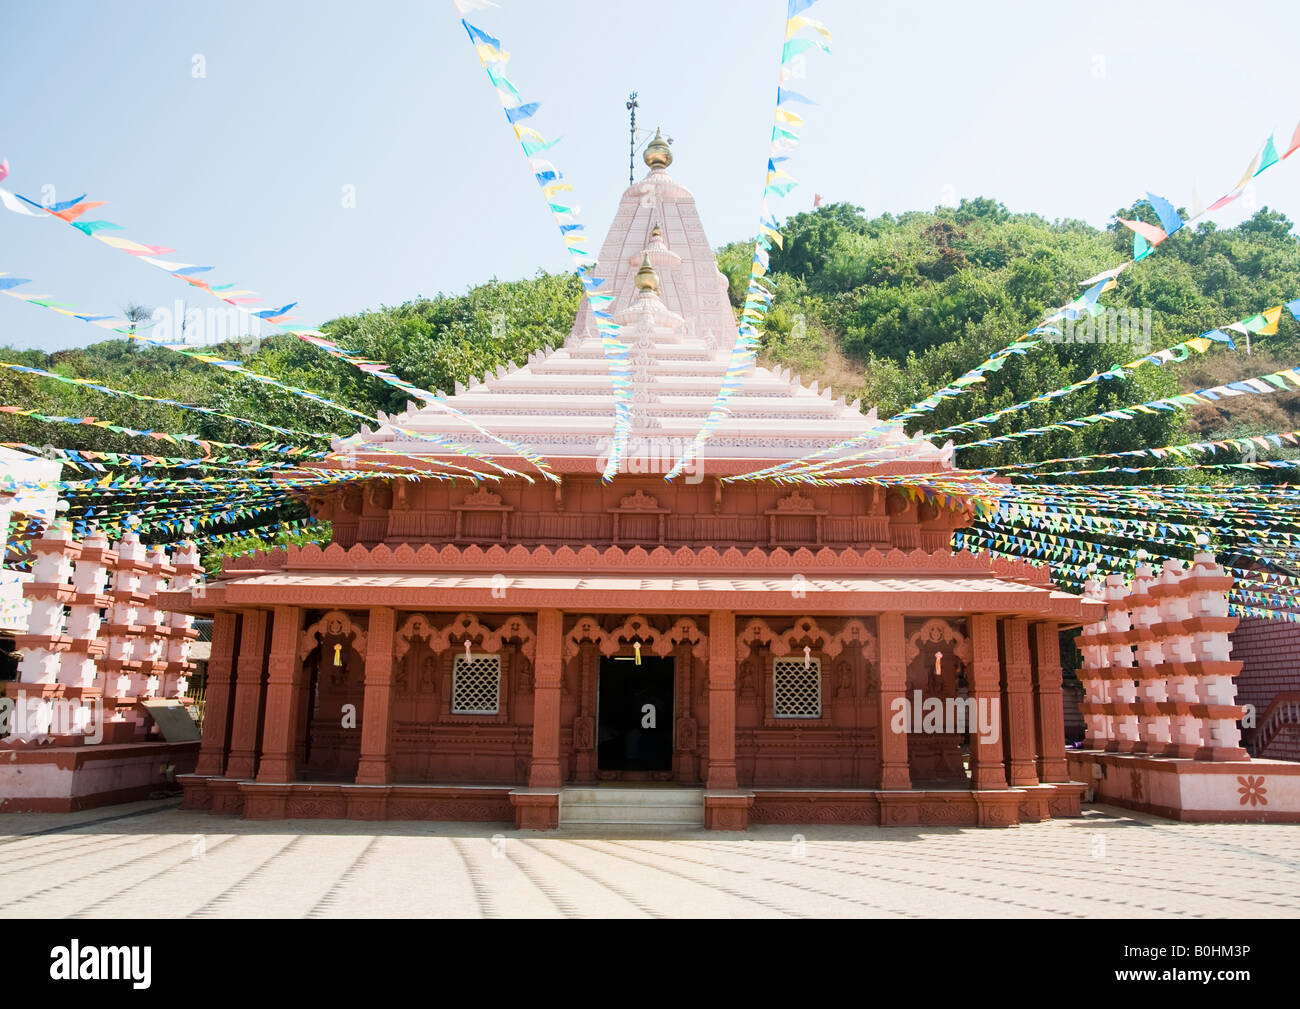 C'est le temple de Seigneur Ganesh sur la plage, où la divinité de Ganpati trouve son origine dans sa forme naturelle appelé Swayambhu. Banque D'Images